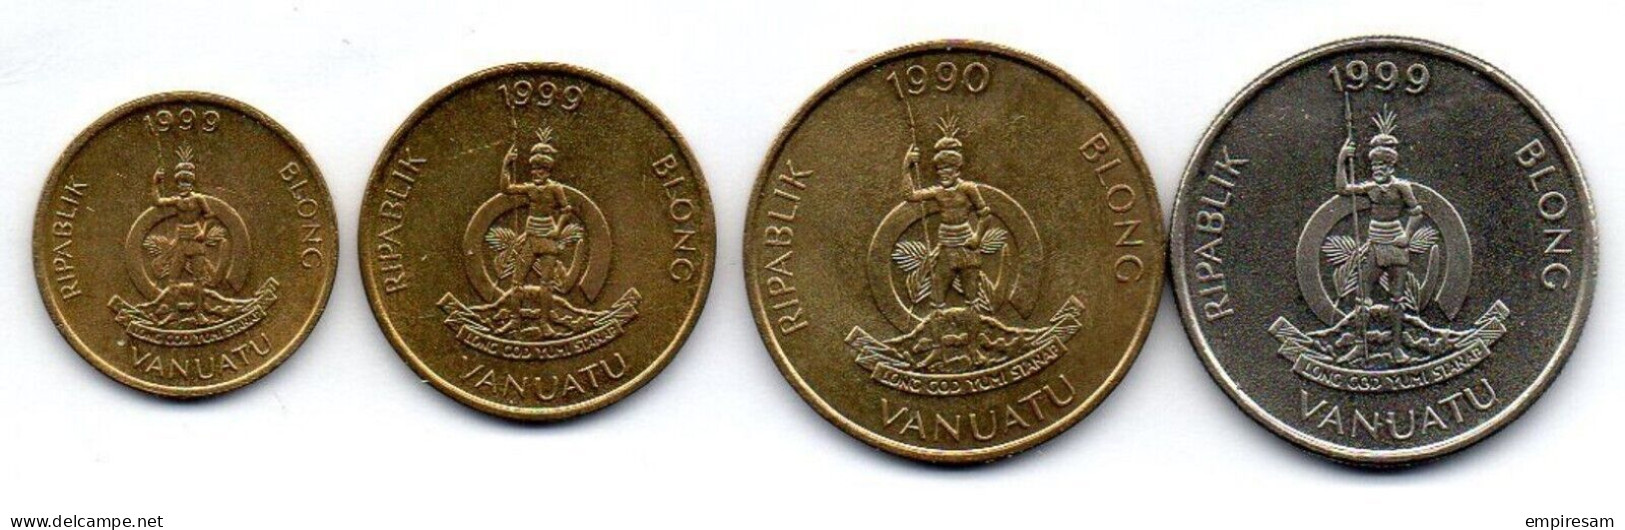 VANUATU-Setof 4coins 1, 2, 5, 10 Vatu- Ni-Brass, Cu-Ni- 1990-1999, KM #3 - 6 - Vanuatu